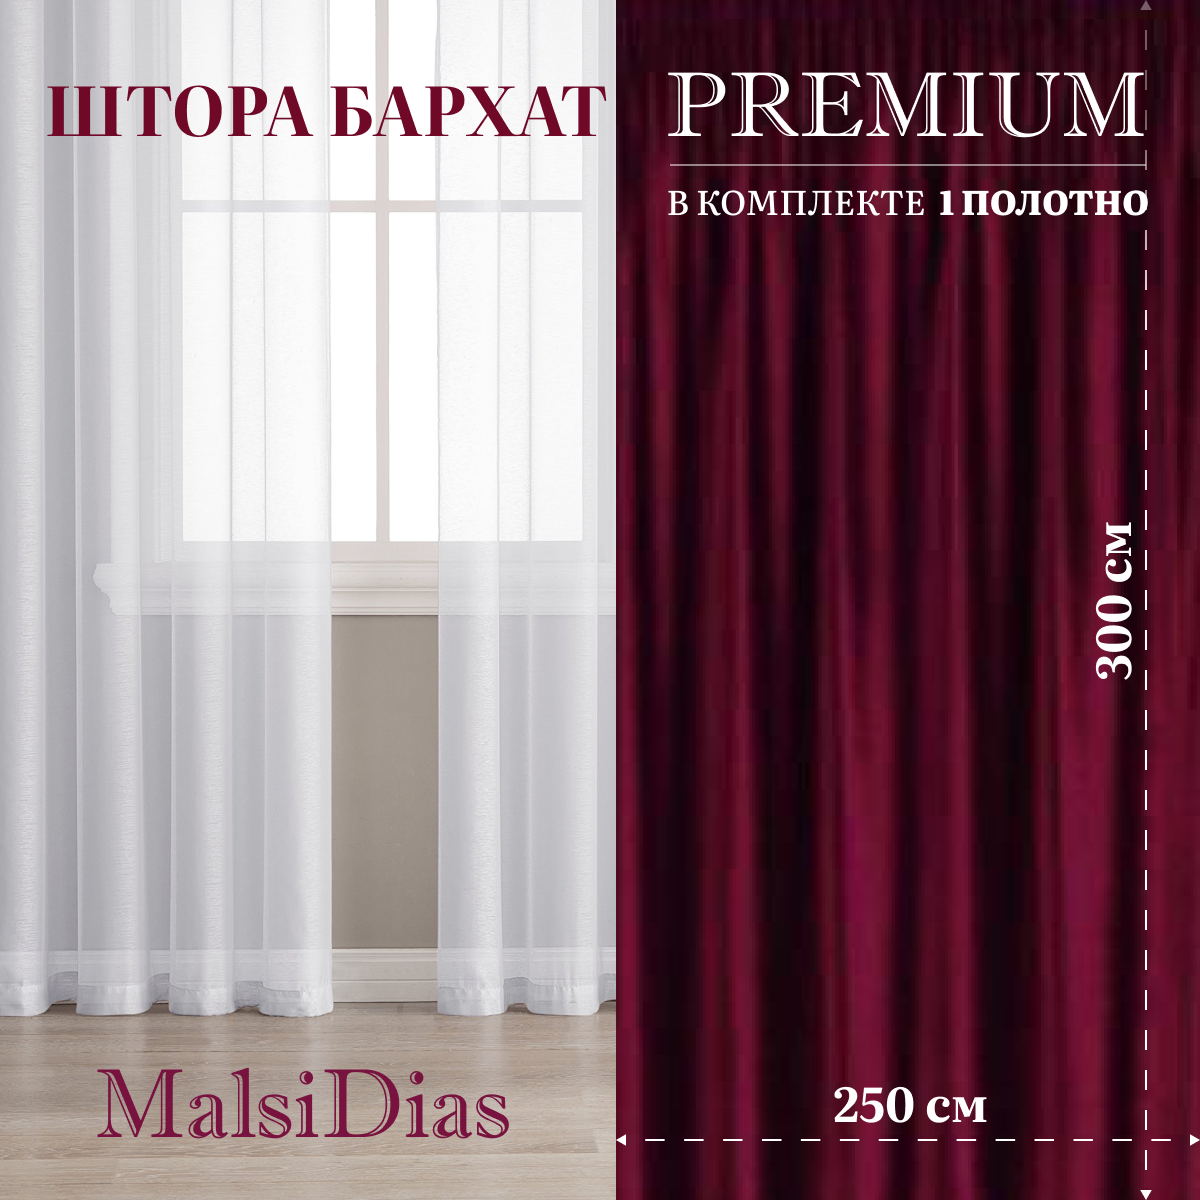 Штора бархат MalsiDias 300х250, бордовый. Портьера на шторной ленте. Шторы для комнаты, гостиной, кухни.